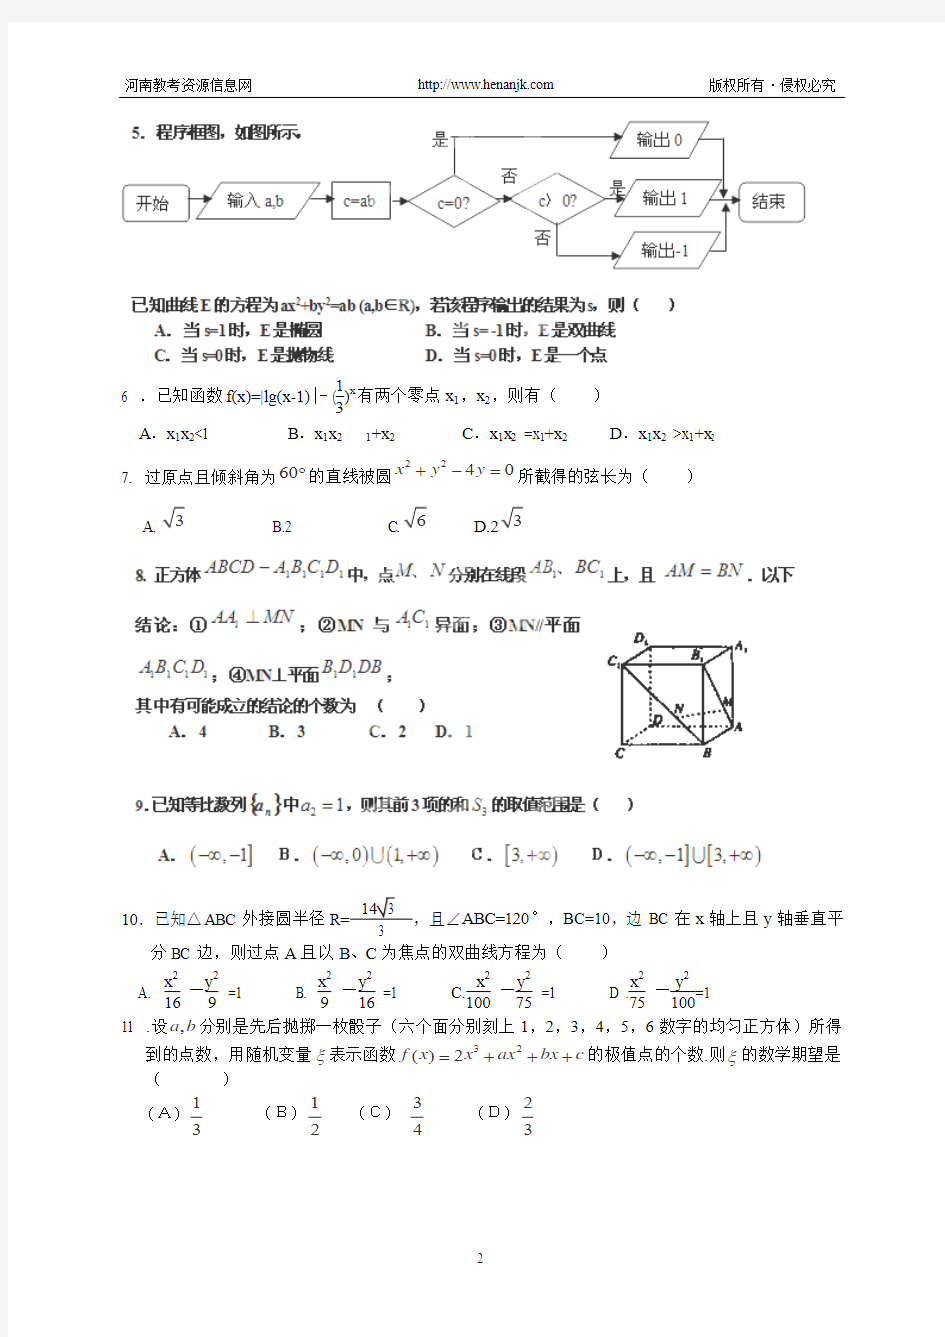 鹤壁高中2012届高三压轴卷(一)--数学(理)